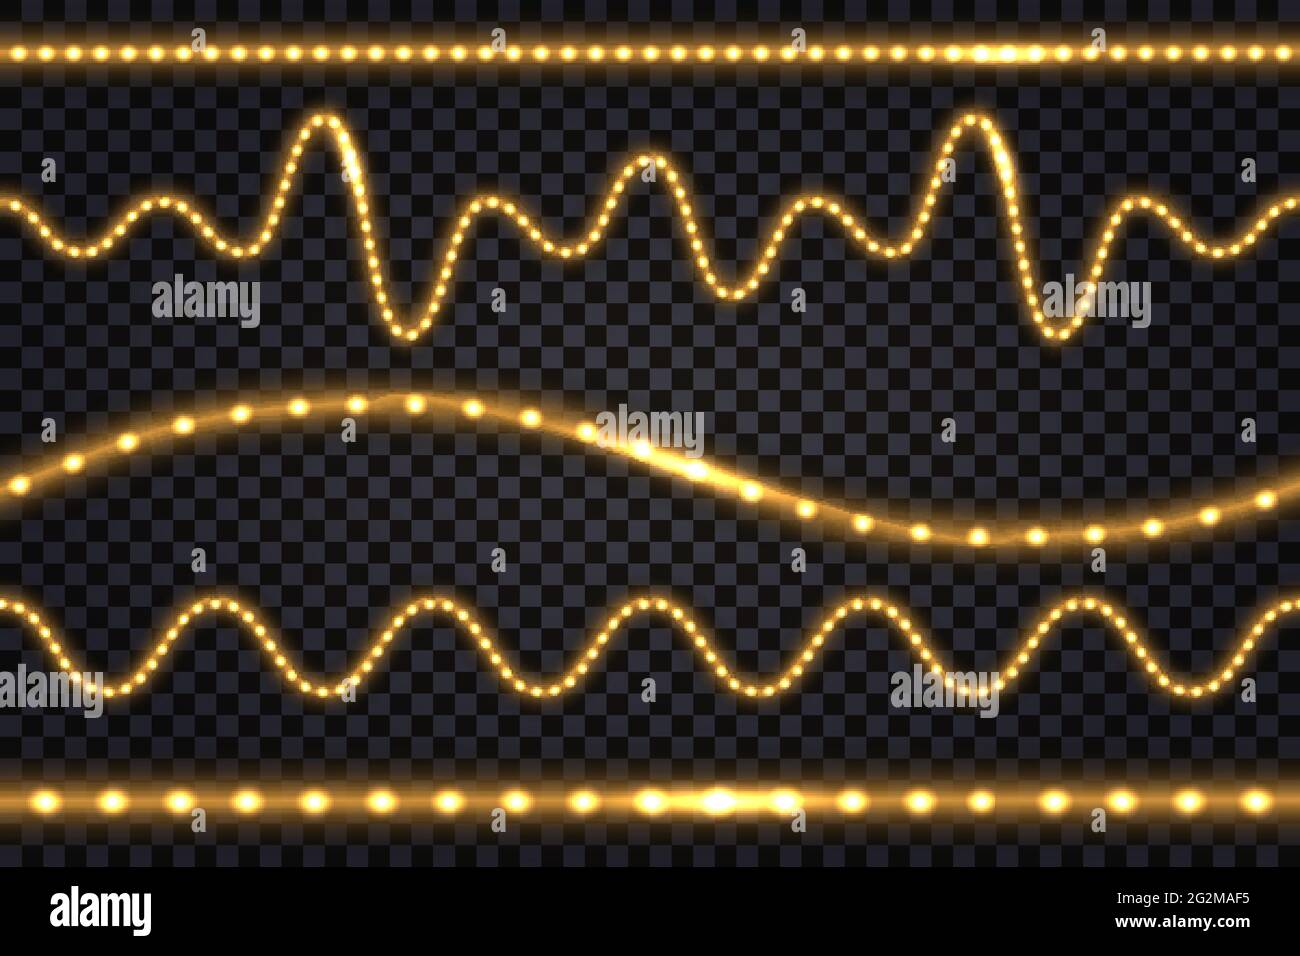 Realistische Gold-LED-Linien mit Neon-Licht-Effekt. Beleuchtete Streifen und Wellen, isolierte Bänder auf transparentem Hintergrund. Vektorgrafiken Stock Vektor